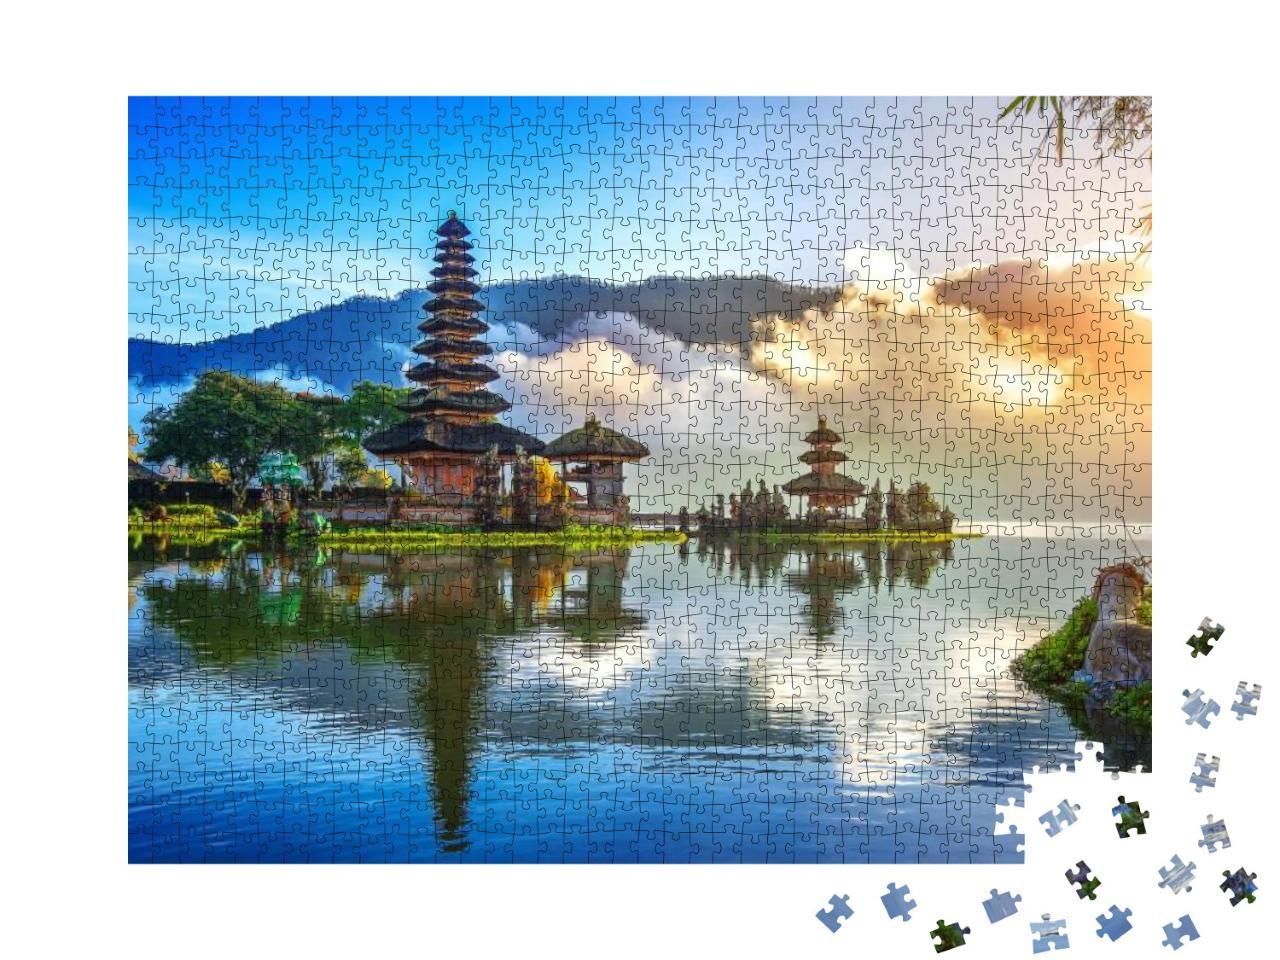 Pura Ulun Danu Bra Tan Temple in Bali, Indonesia... Jigsaw Puzzle with 1000 pieces